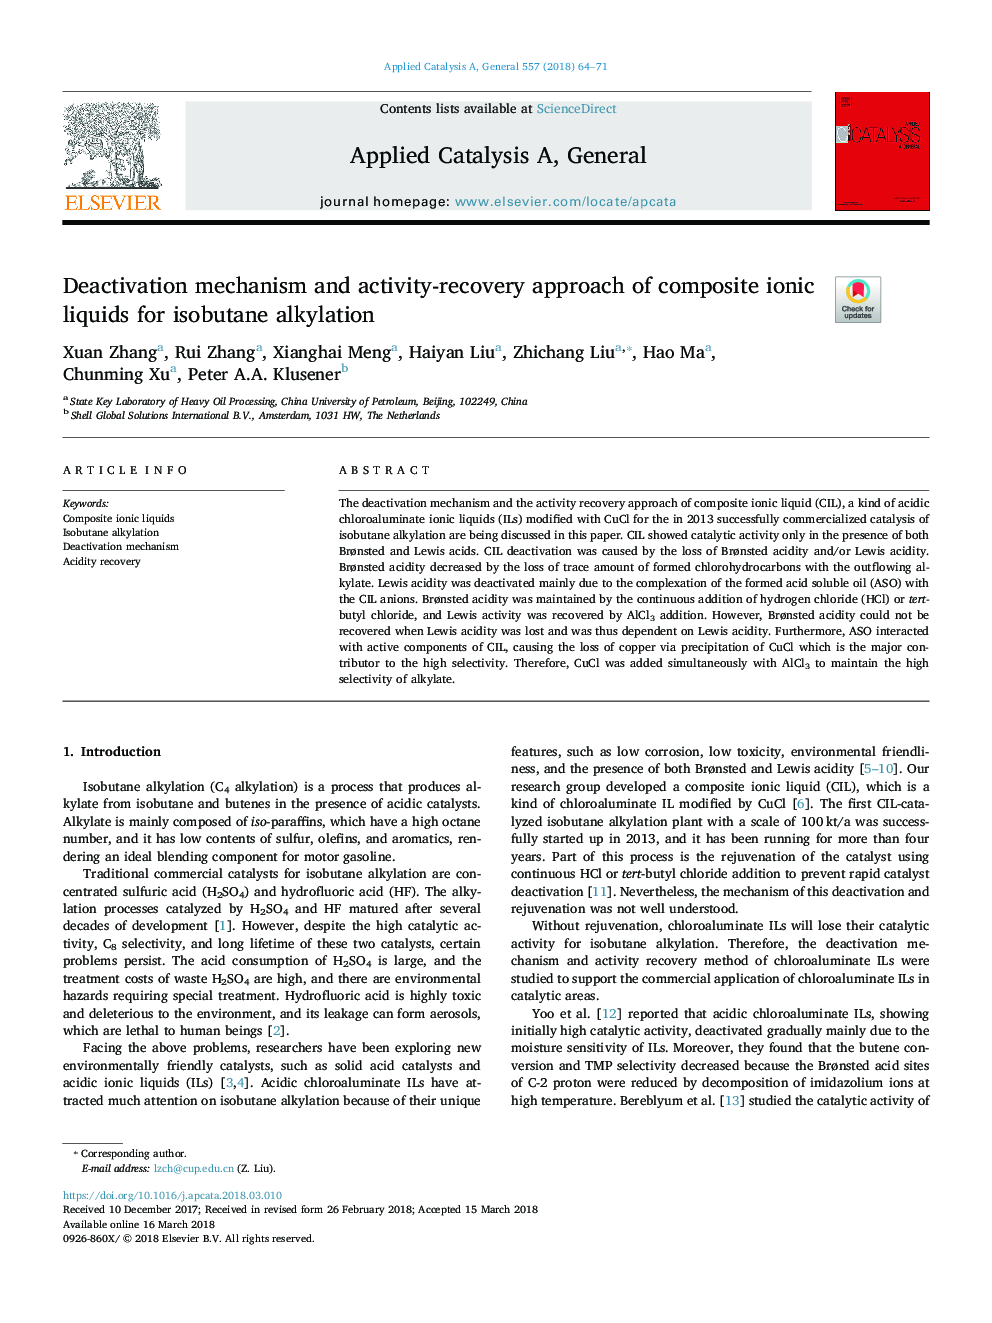 مکانیزم غیر فعال سازی و رویکرد بهبود فعالیت مایعات یونی کامپوزیت برای آلبیکس ایزوبوتان 